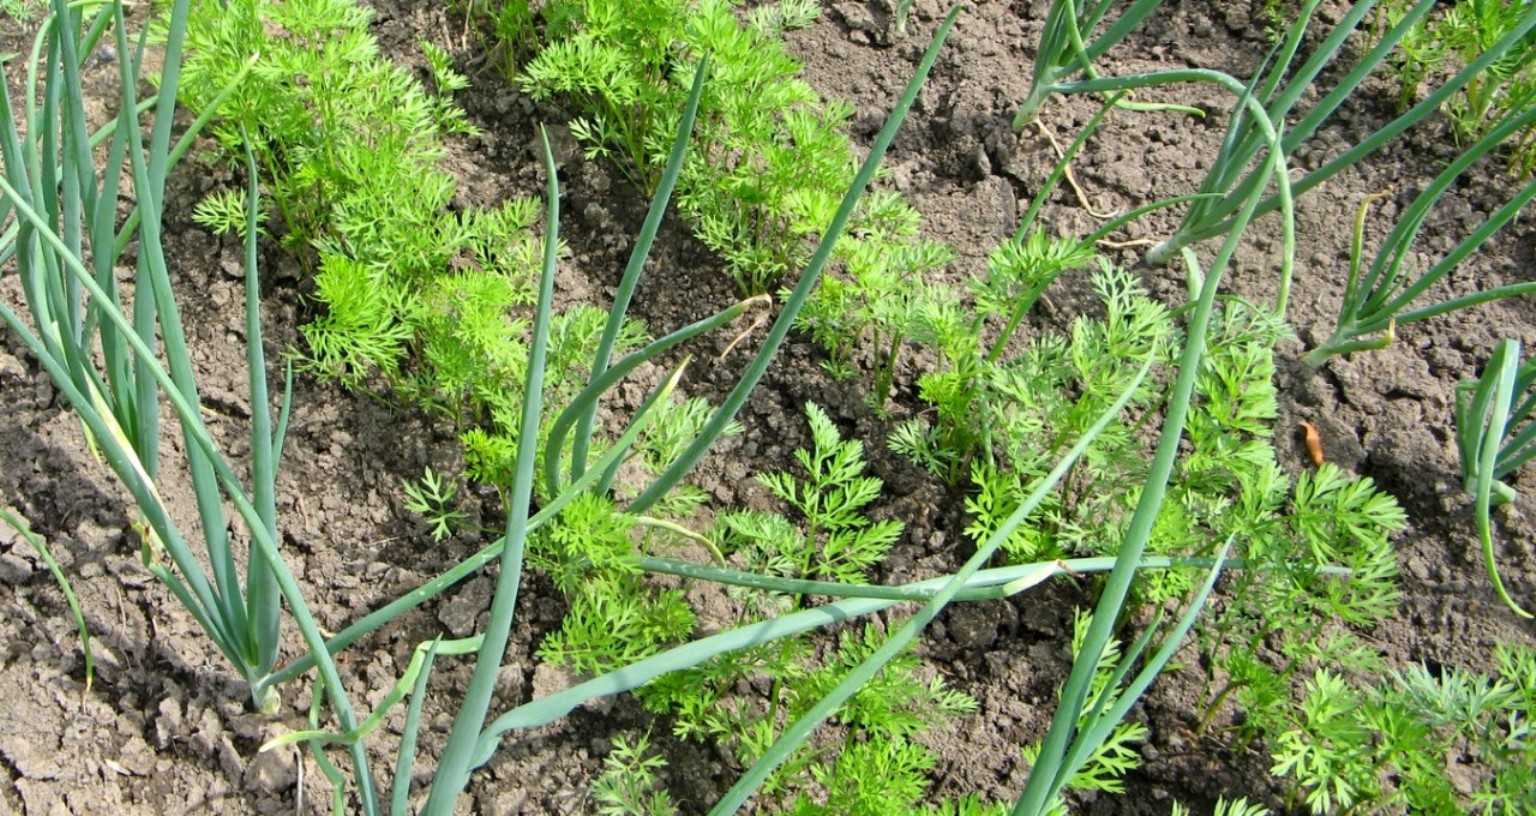 Морковь и укроп: как отличить всходы, можно ли сажать рядом, совместимость семян культур при соседстве на одной грядке, а также фото растений после посадки